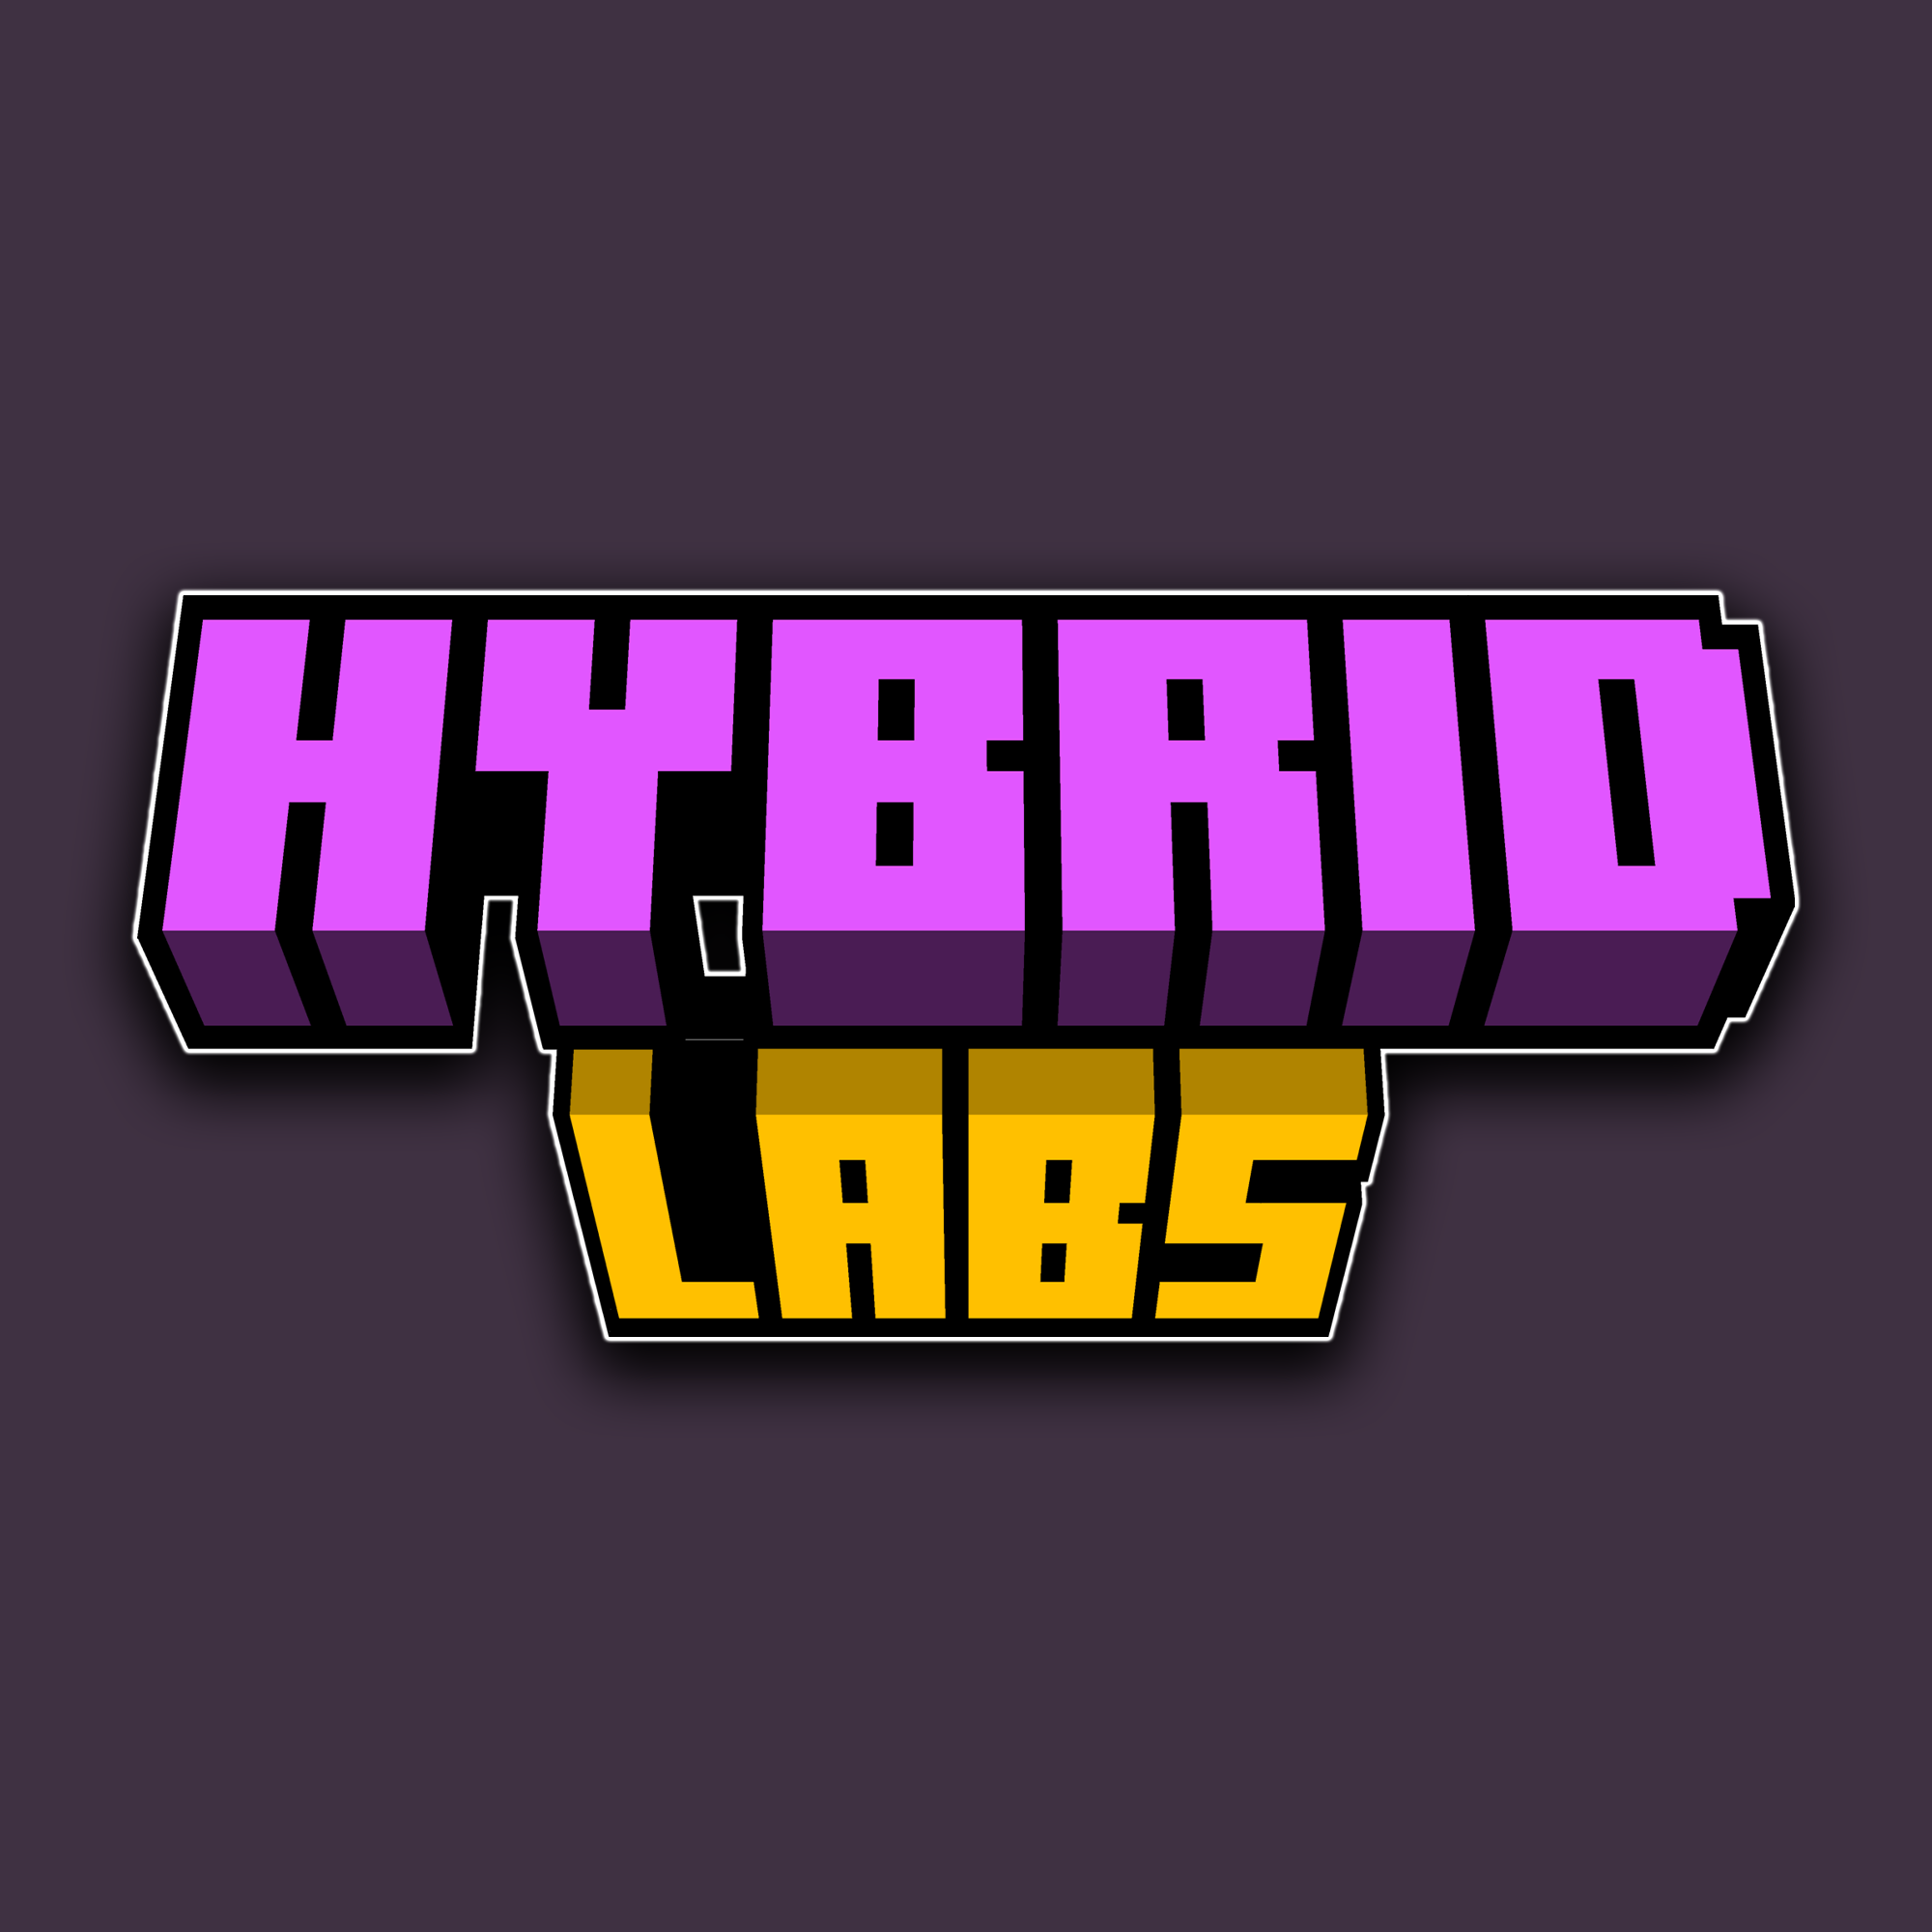 hybridlabs.mc